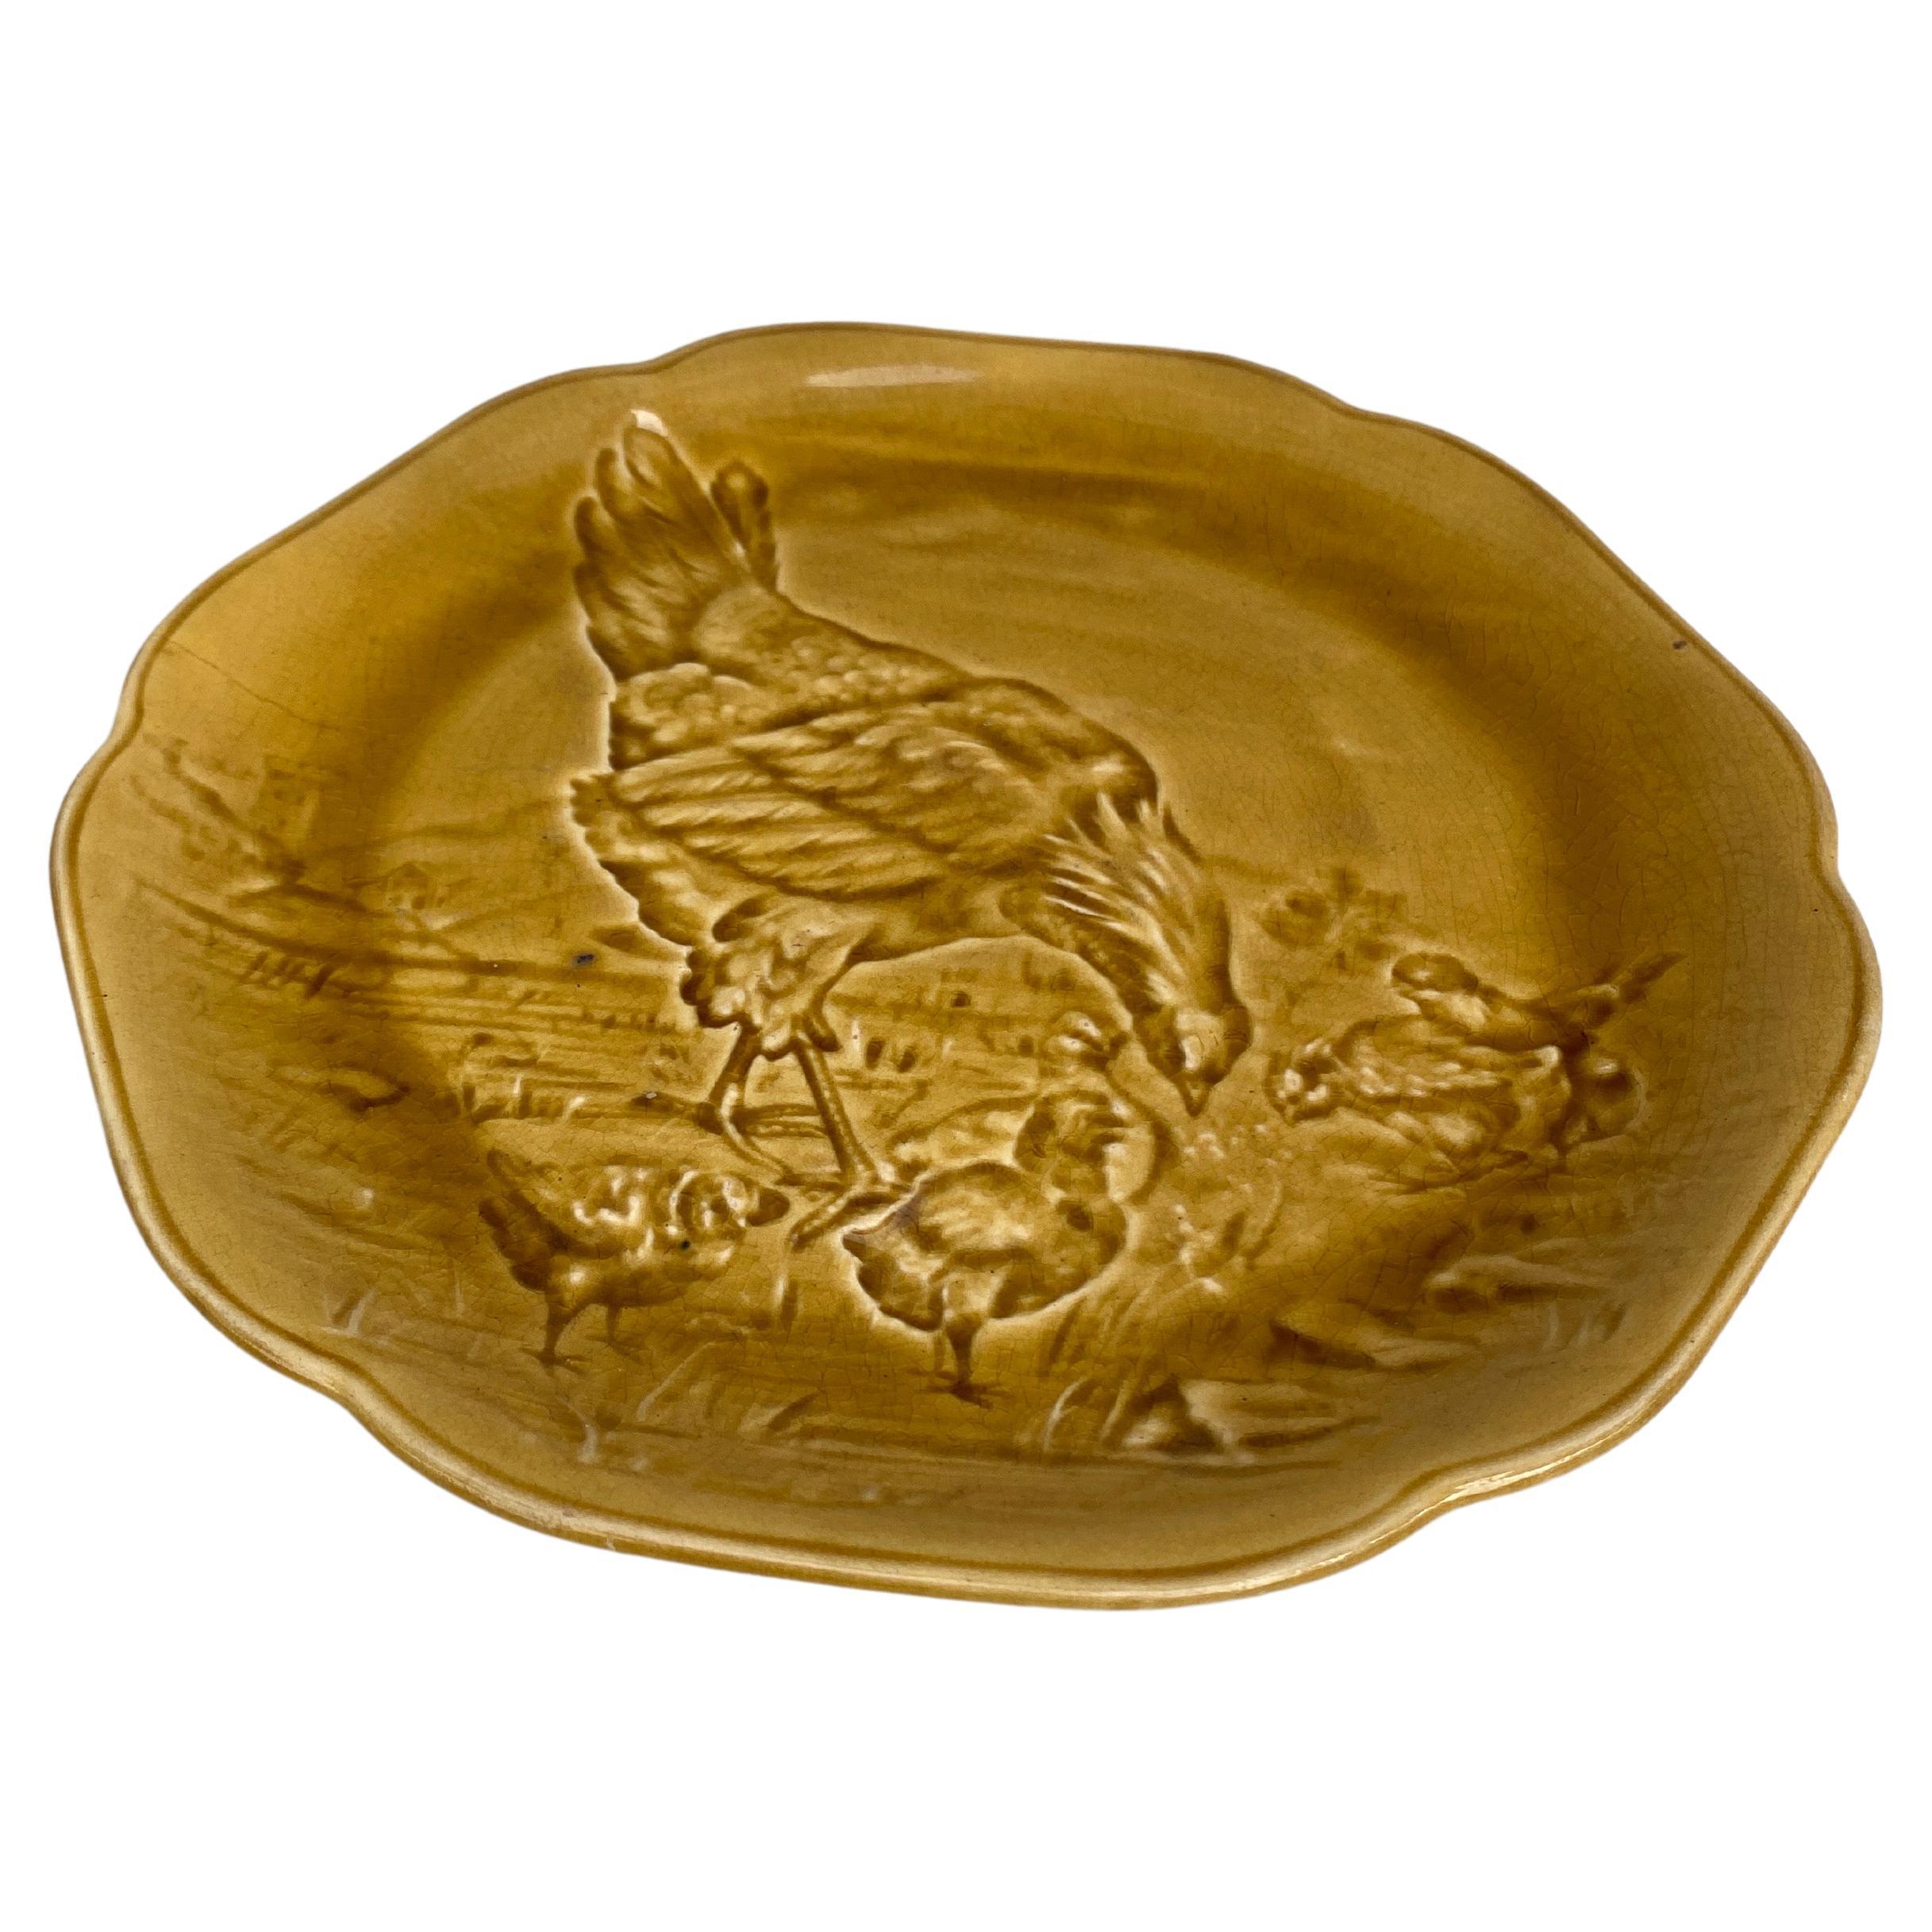 Ravissante assiette en majolique jaune avec poule et poussins signée Hippolyte Boulenger Choisy-le-Roi, circa 1890.
La manufacture de Choisy-le-Roi était l'une des plus importantes à la fin du 19ème siècle, elle produisait des céramiques de très